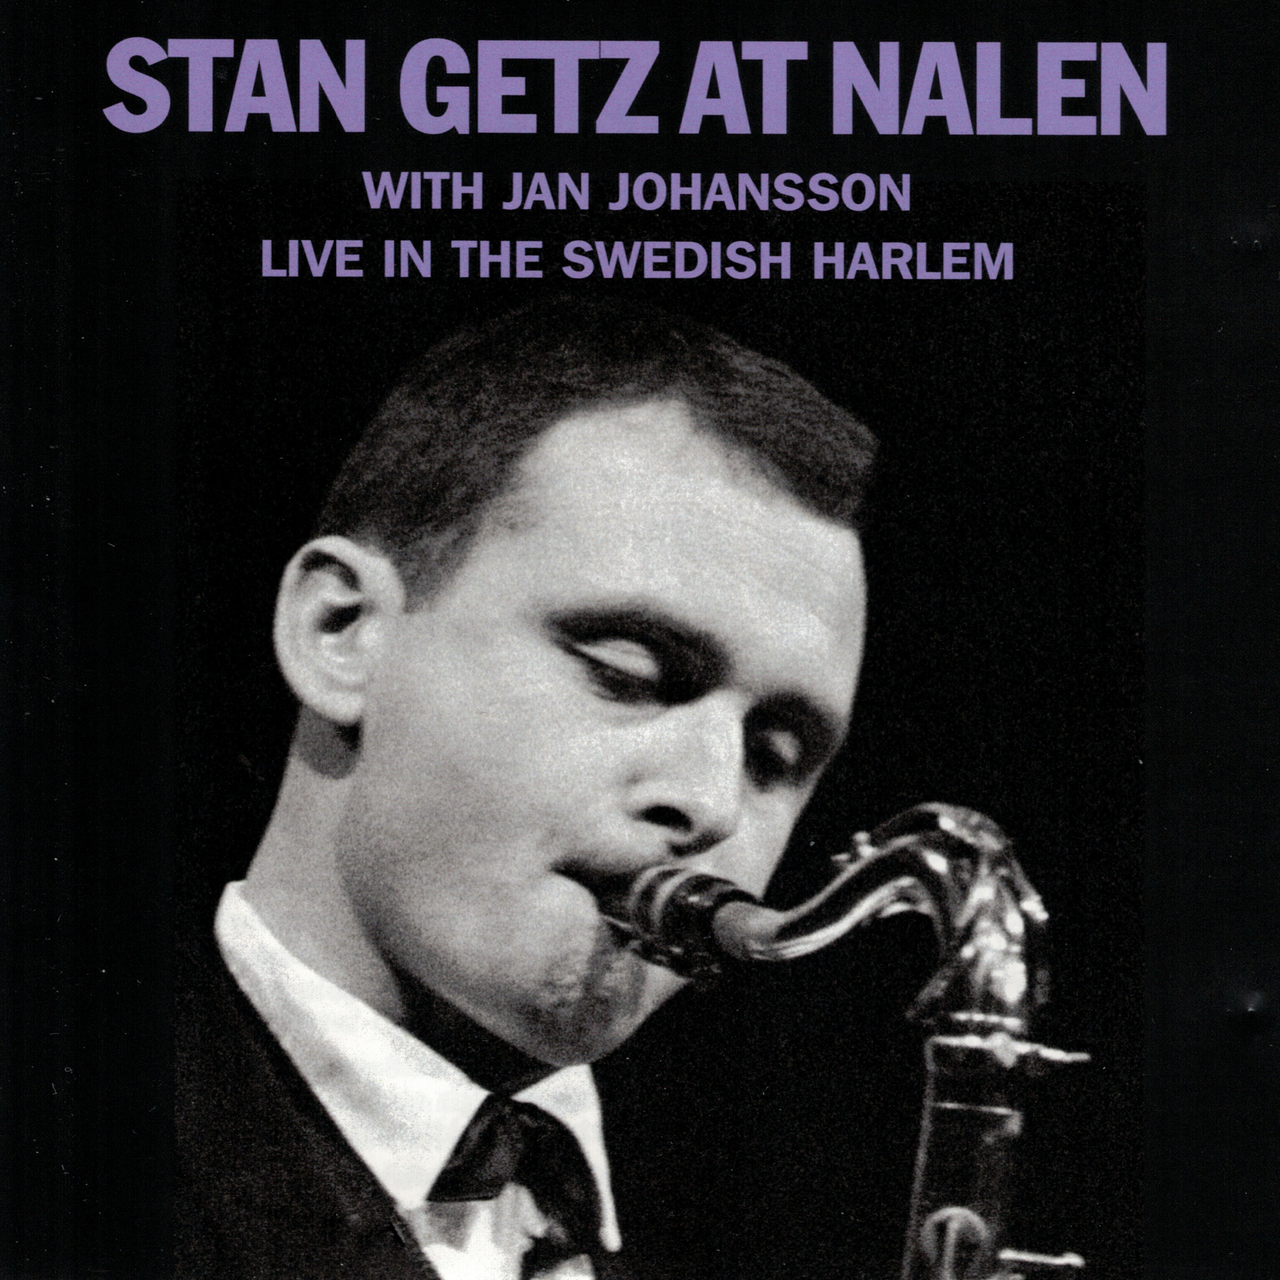 Stan Getz at Nalen album art